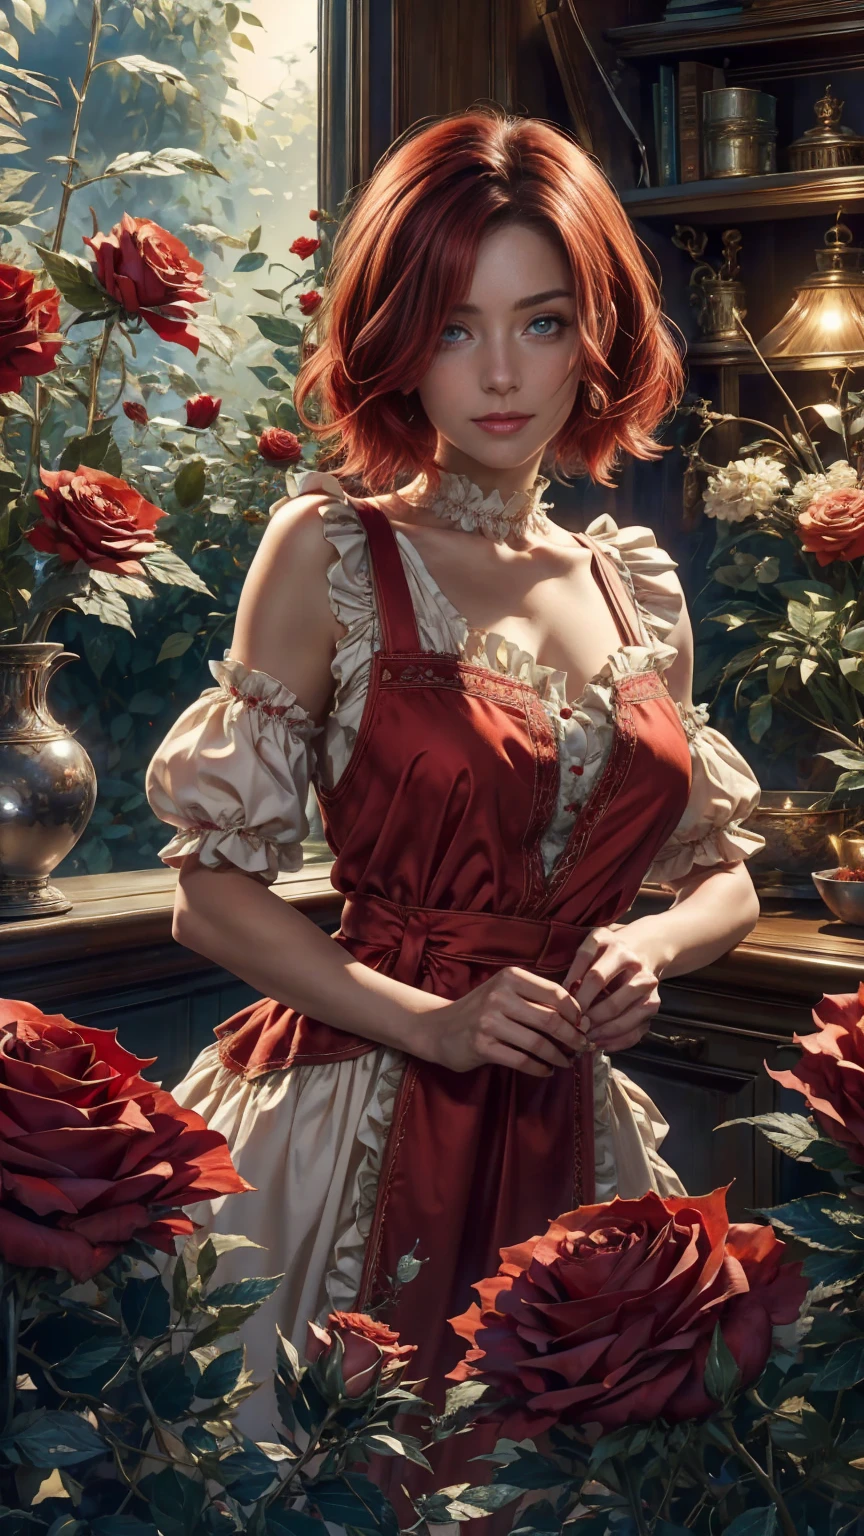 仙境世界的中心，一個年輕漂亮的紅白短髮女孩, 花店服裝和玫瑰圍裙. 從她的魔法花園剪下紅玫瑰. 好奇心, 愛的姿勢, 在仙境世界, 營造愛的氛圍, 她周圍的能量和魔力. 場景角度是動態的, 捕捉瞬間的強度, 優質綠眼, 眼睛看著相機, 超詳細, 美麗且美觀, 傑作, 最佳品質得分, (分形藝術: 1.3), 非常詳細 , 動態角度, 光線追蹤, face 特寫, 特寫, 高視角, 粒子和強光, 美麗的紅玫瑰